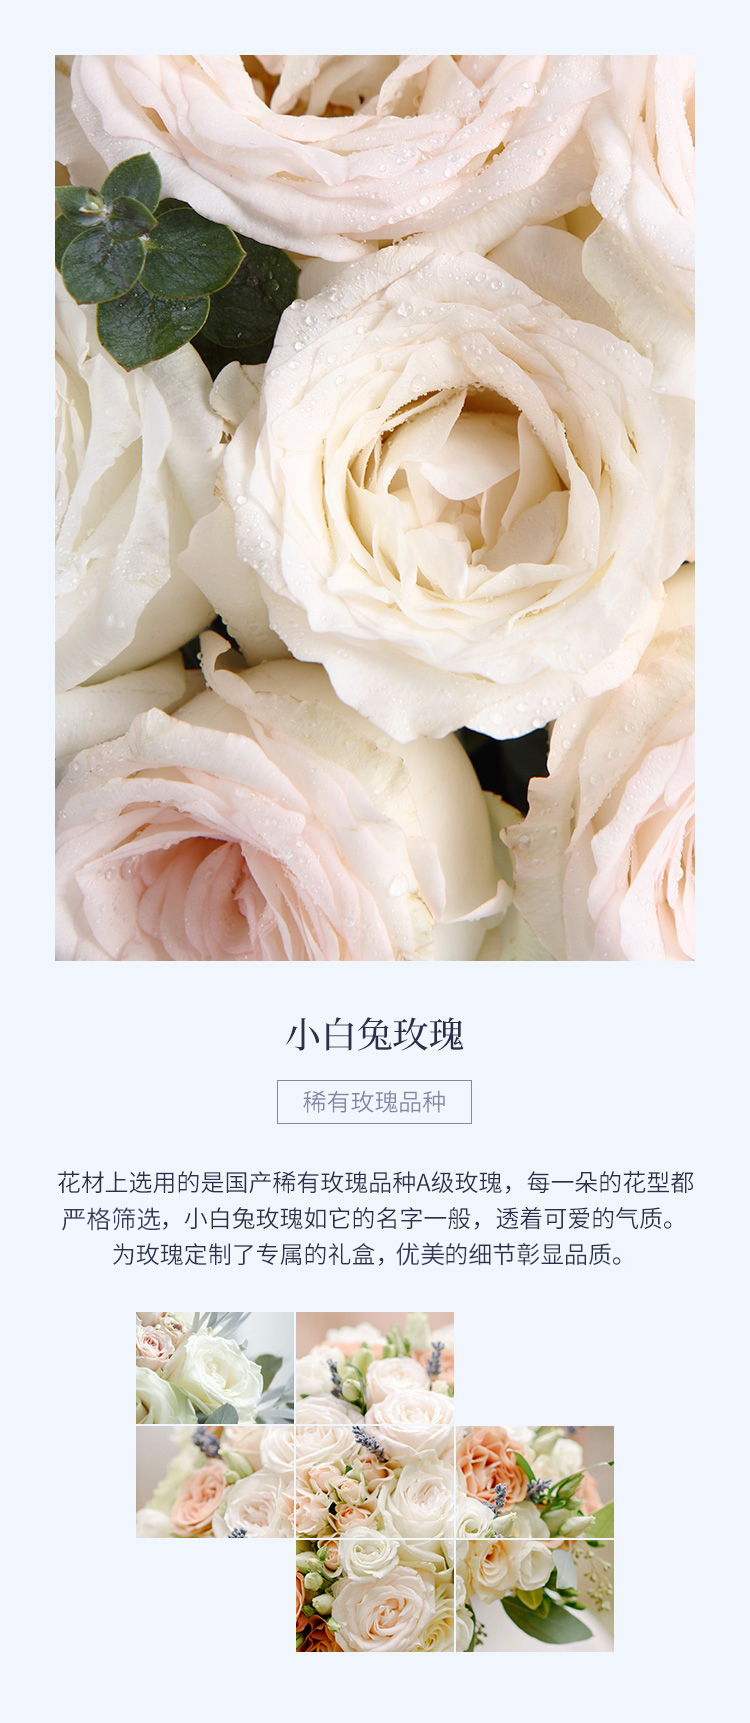 花礼/瓦尔登湖畔/设计师臻选奶白色玫瑰（小白兔）19枝鲜花/七夕情人节求婚表白生日礼物鲜花/当日达